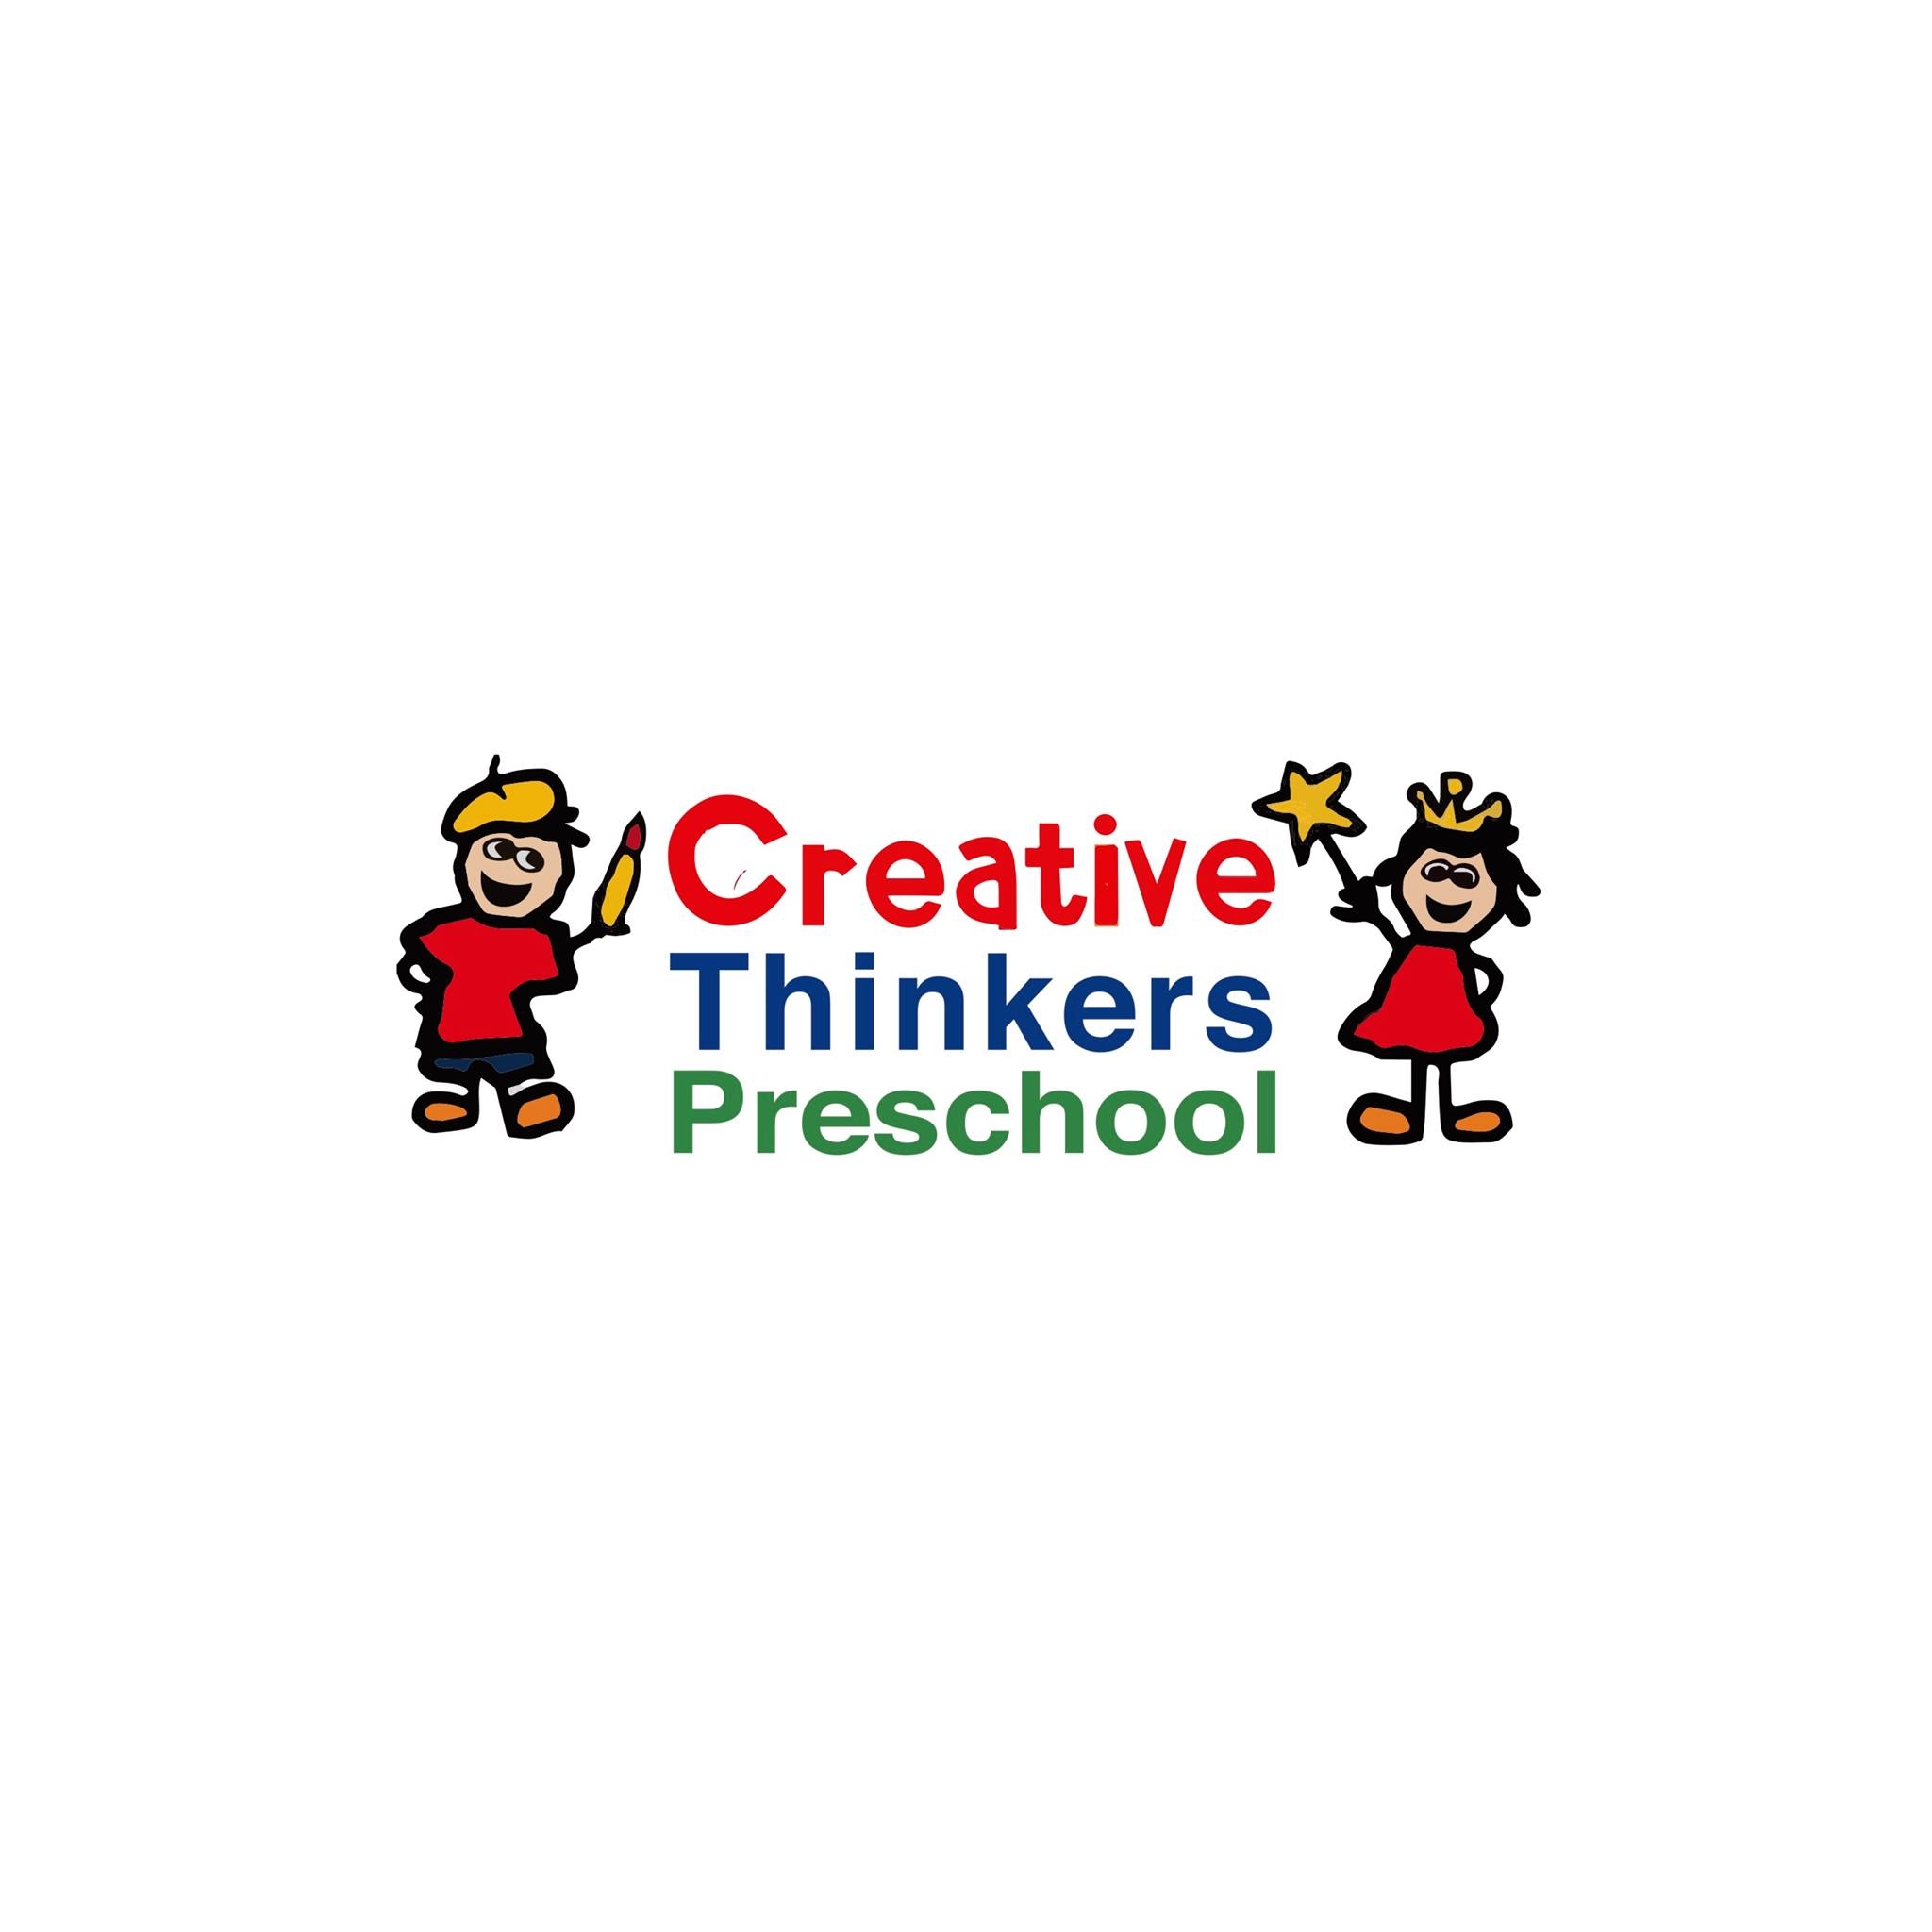 Creative Thinkers Preschool 